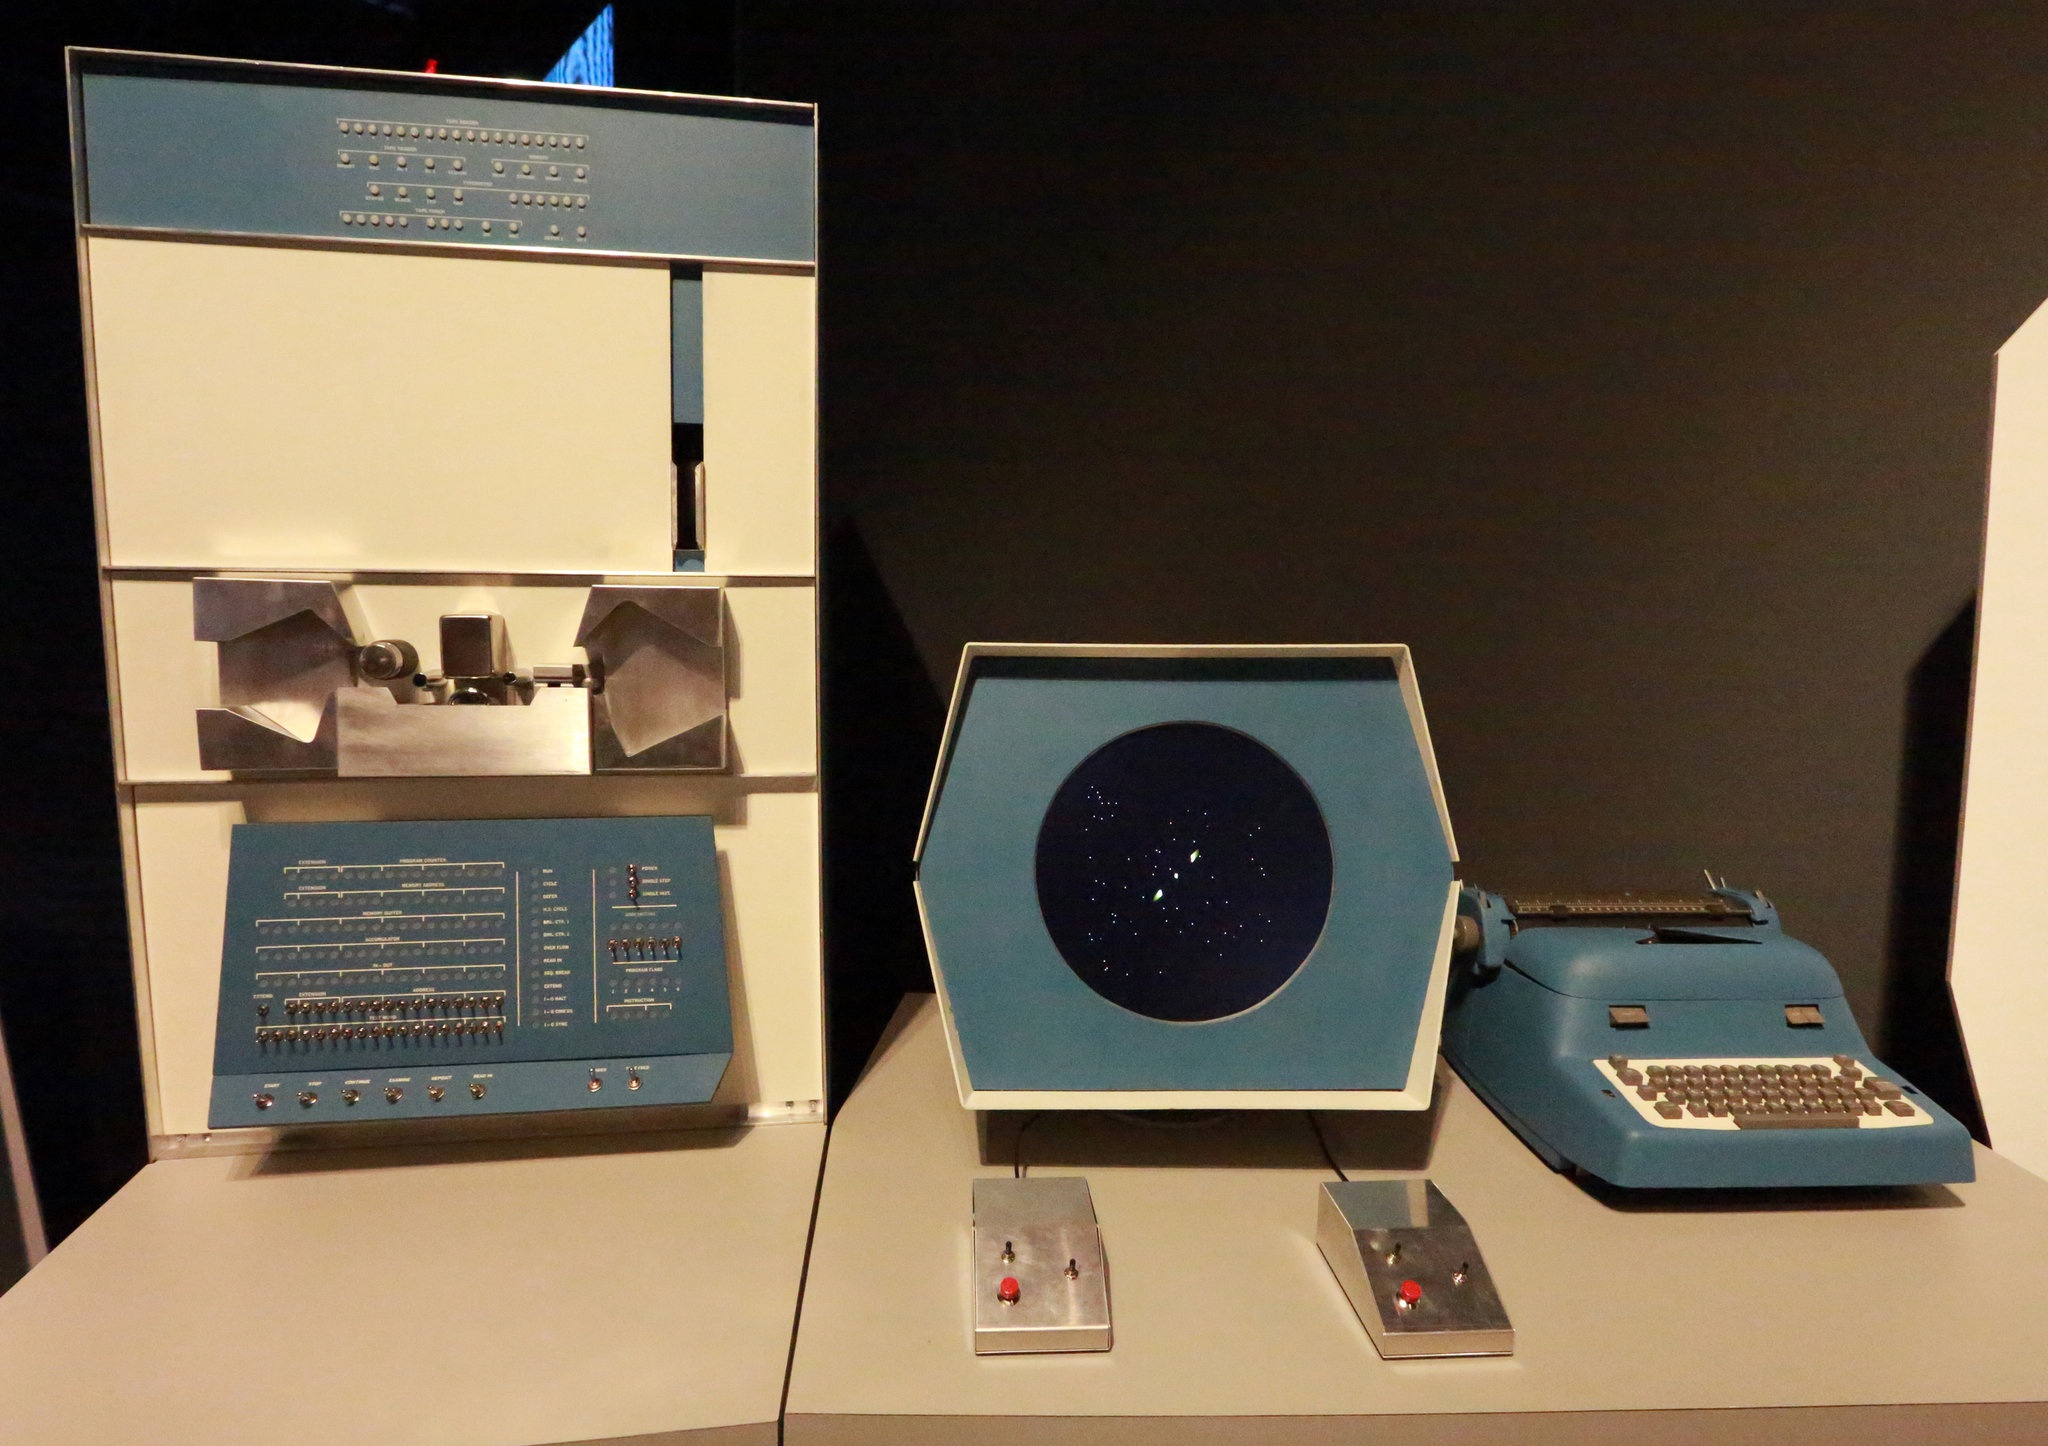 Первая компьютерная игра вышла. Первая компьютерная игра Spacewar. Самая первая компьютерная игра в мире Spacewar. Spacewar 1962.